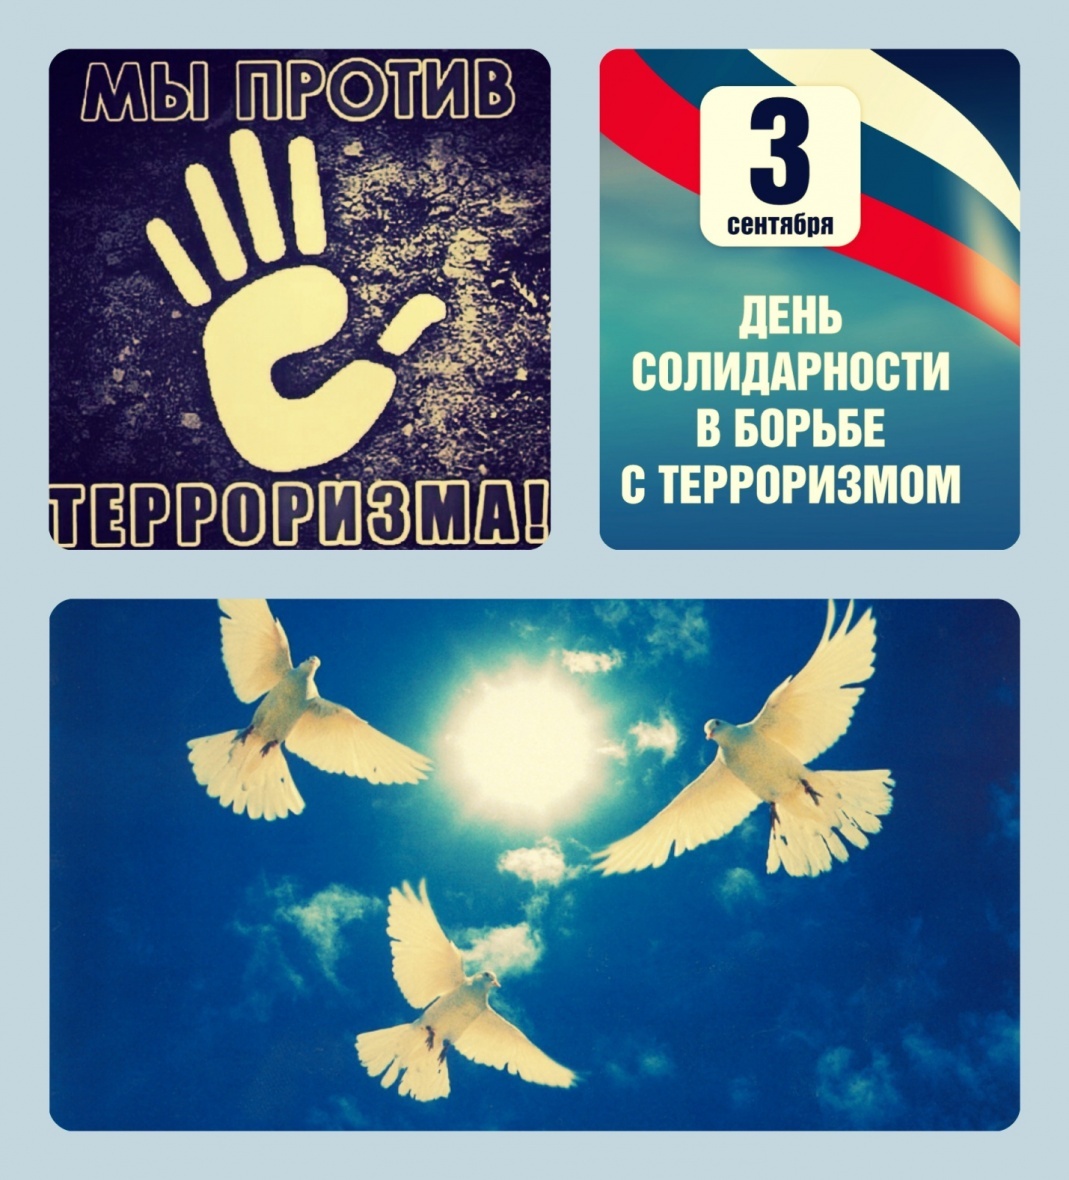 День солидарности в борьбе с терроризмом ежегодно отмечается в России 3 сентября